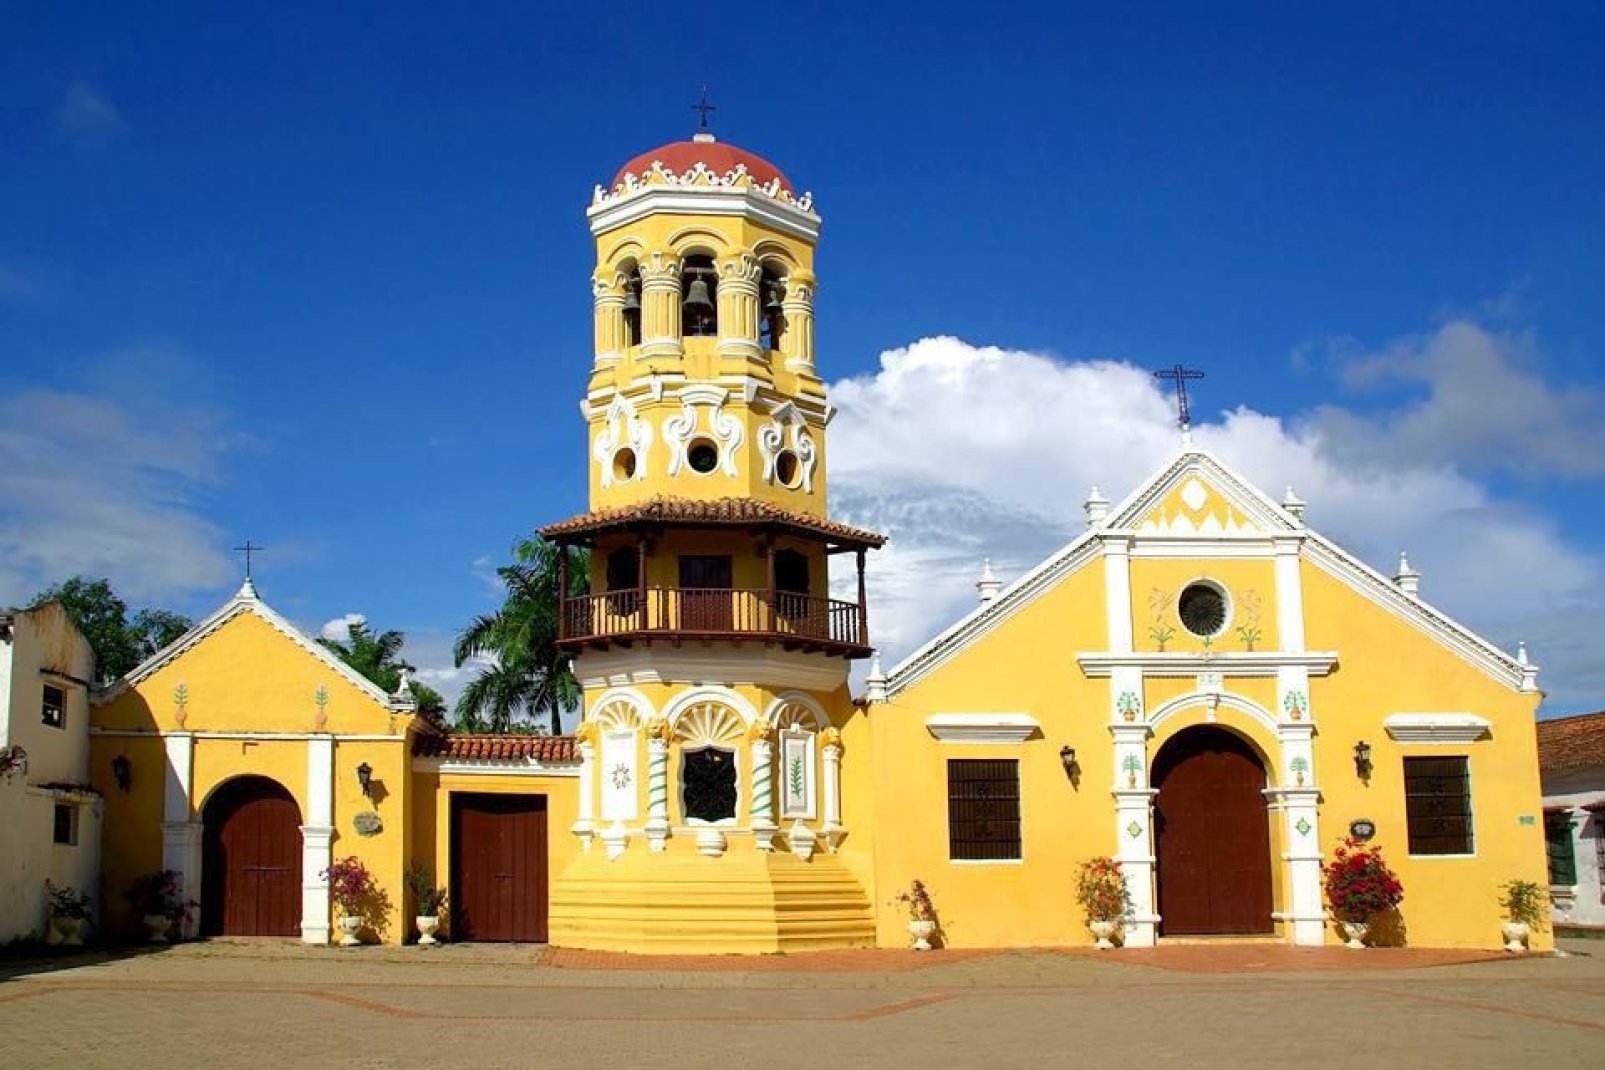 Situada cerca del río Magdalena, la iglesia es un lugar venerado por los habitantes de Mompox.